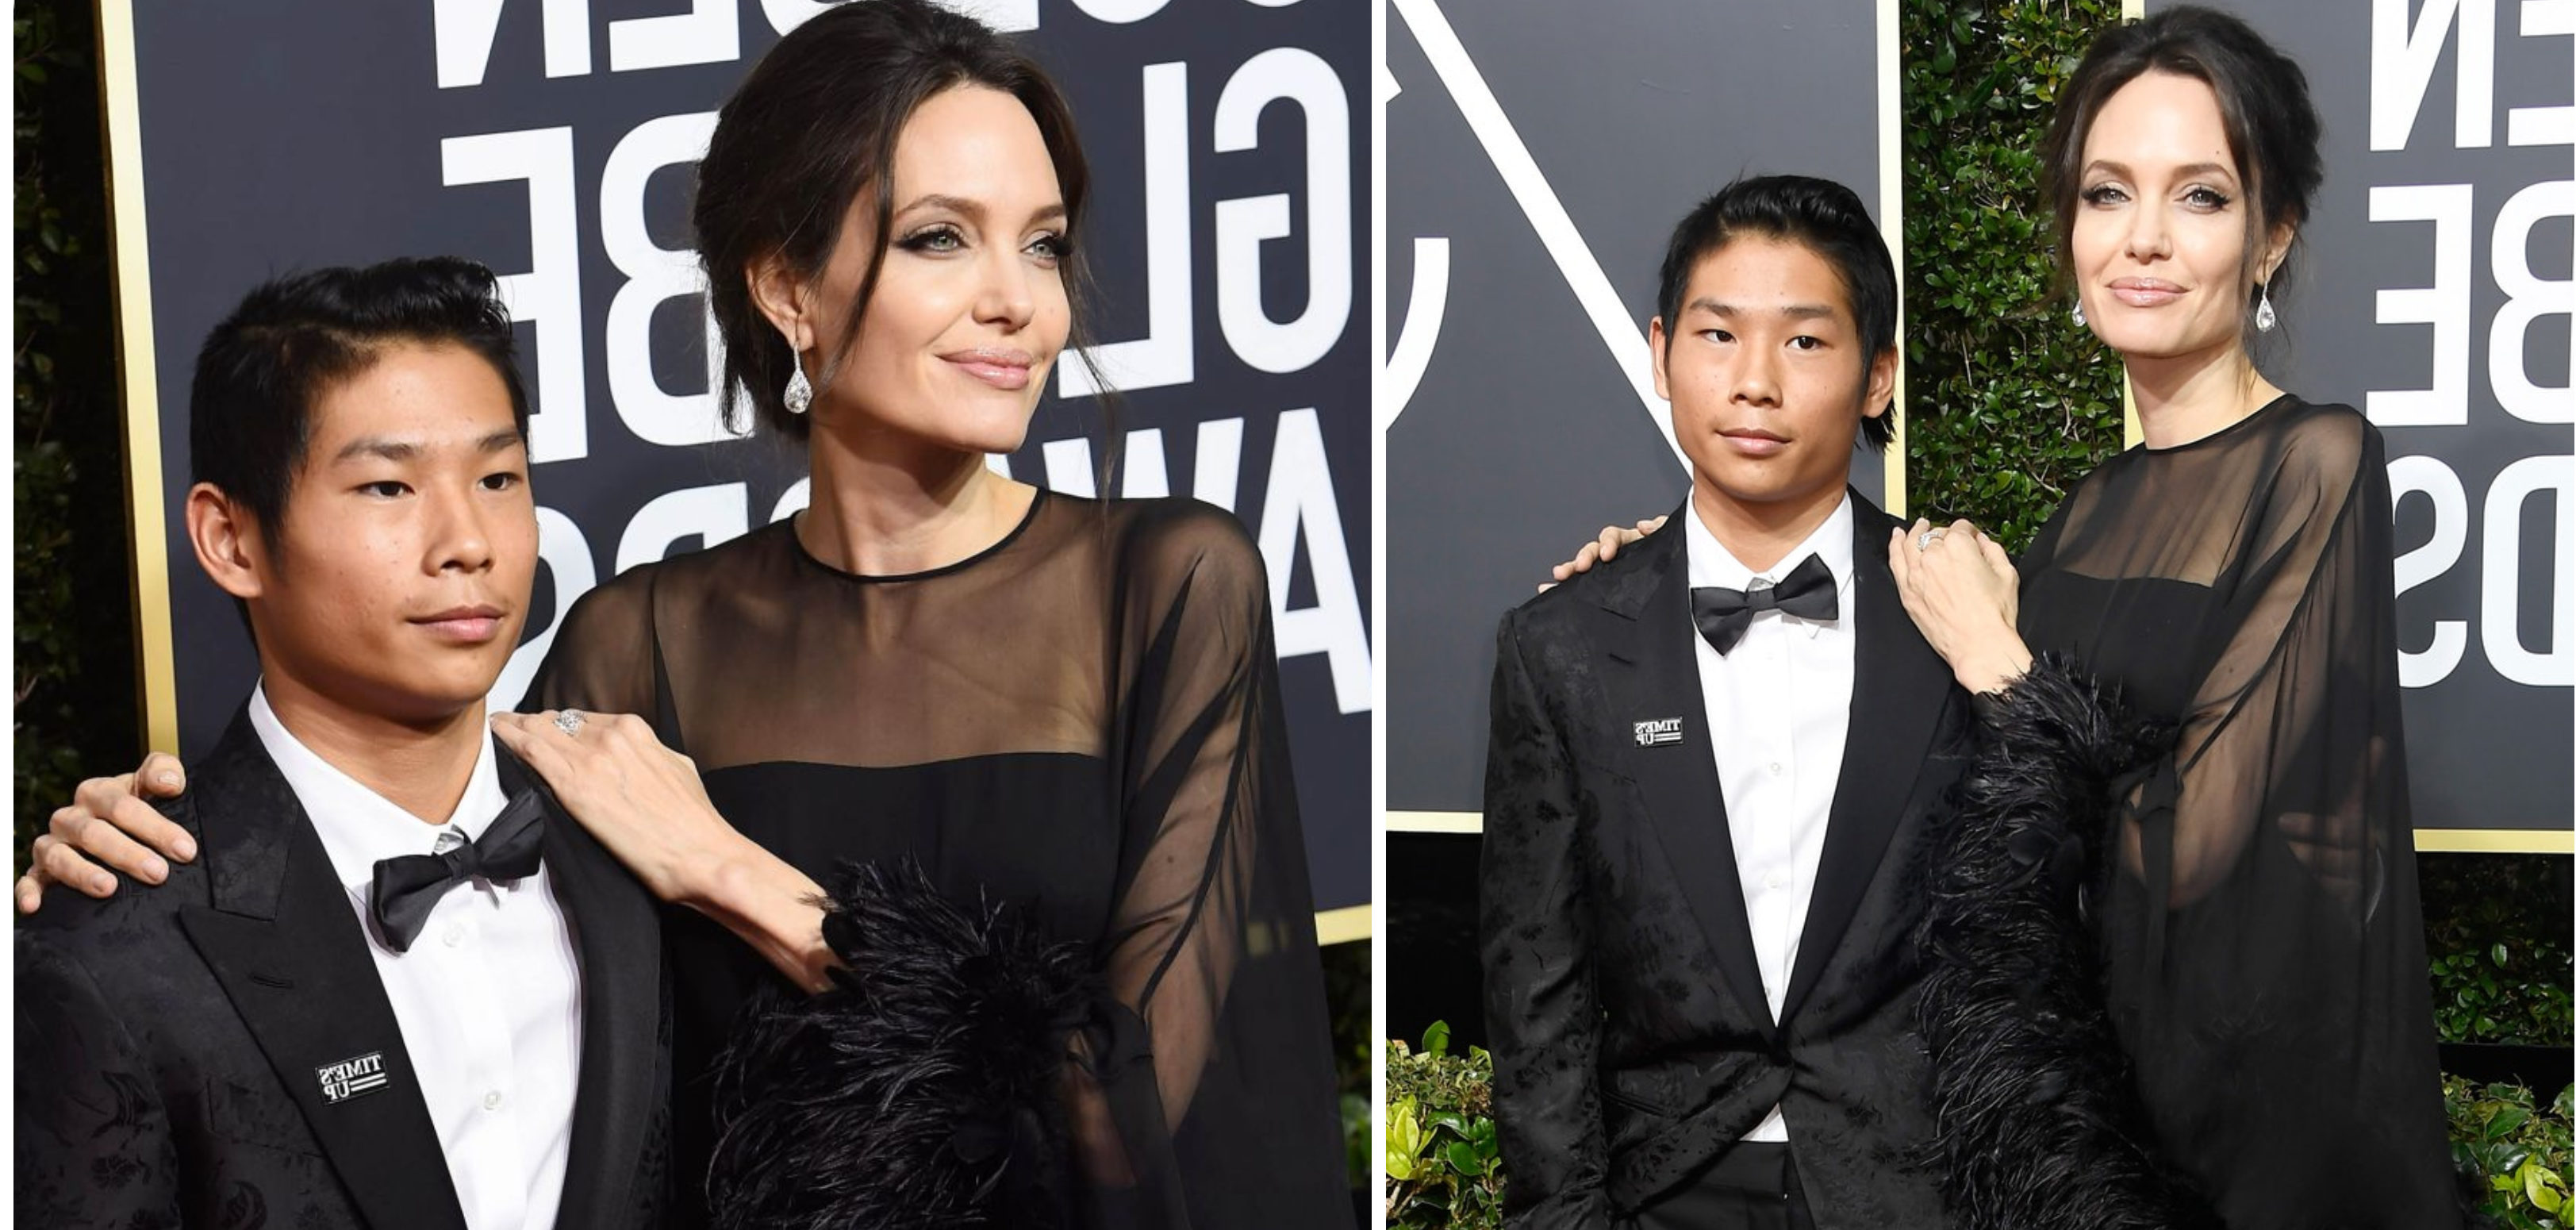 Angelina Jolie : La révélation choc faite à son fils Pax sur Brad Pitt